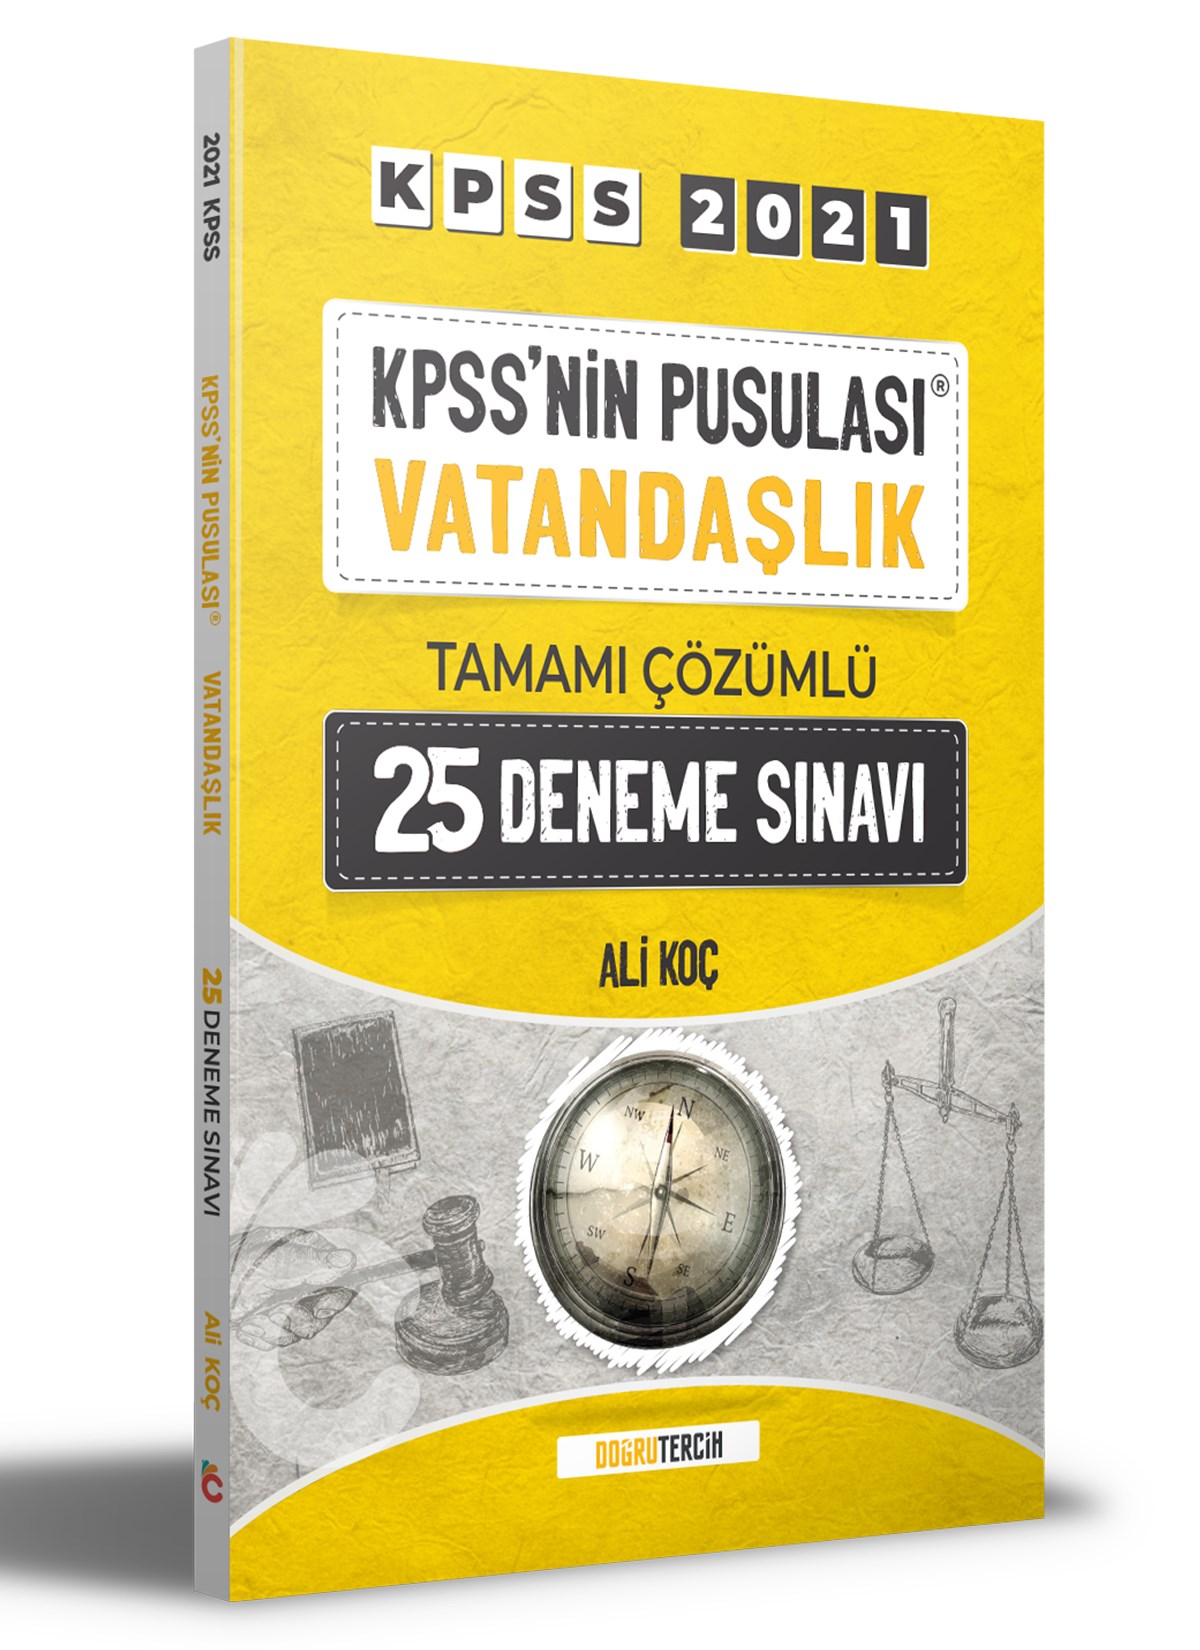 2021 KPSS'NİN Pusulası Vatandaşlık Tamamı Çözümlü 25 Deneme Sınavı Doğru Tercih Yayınları